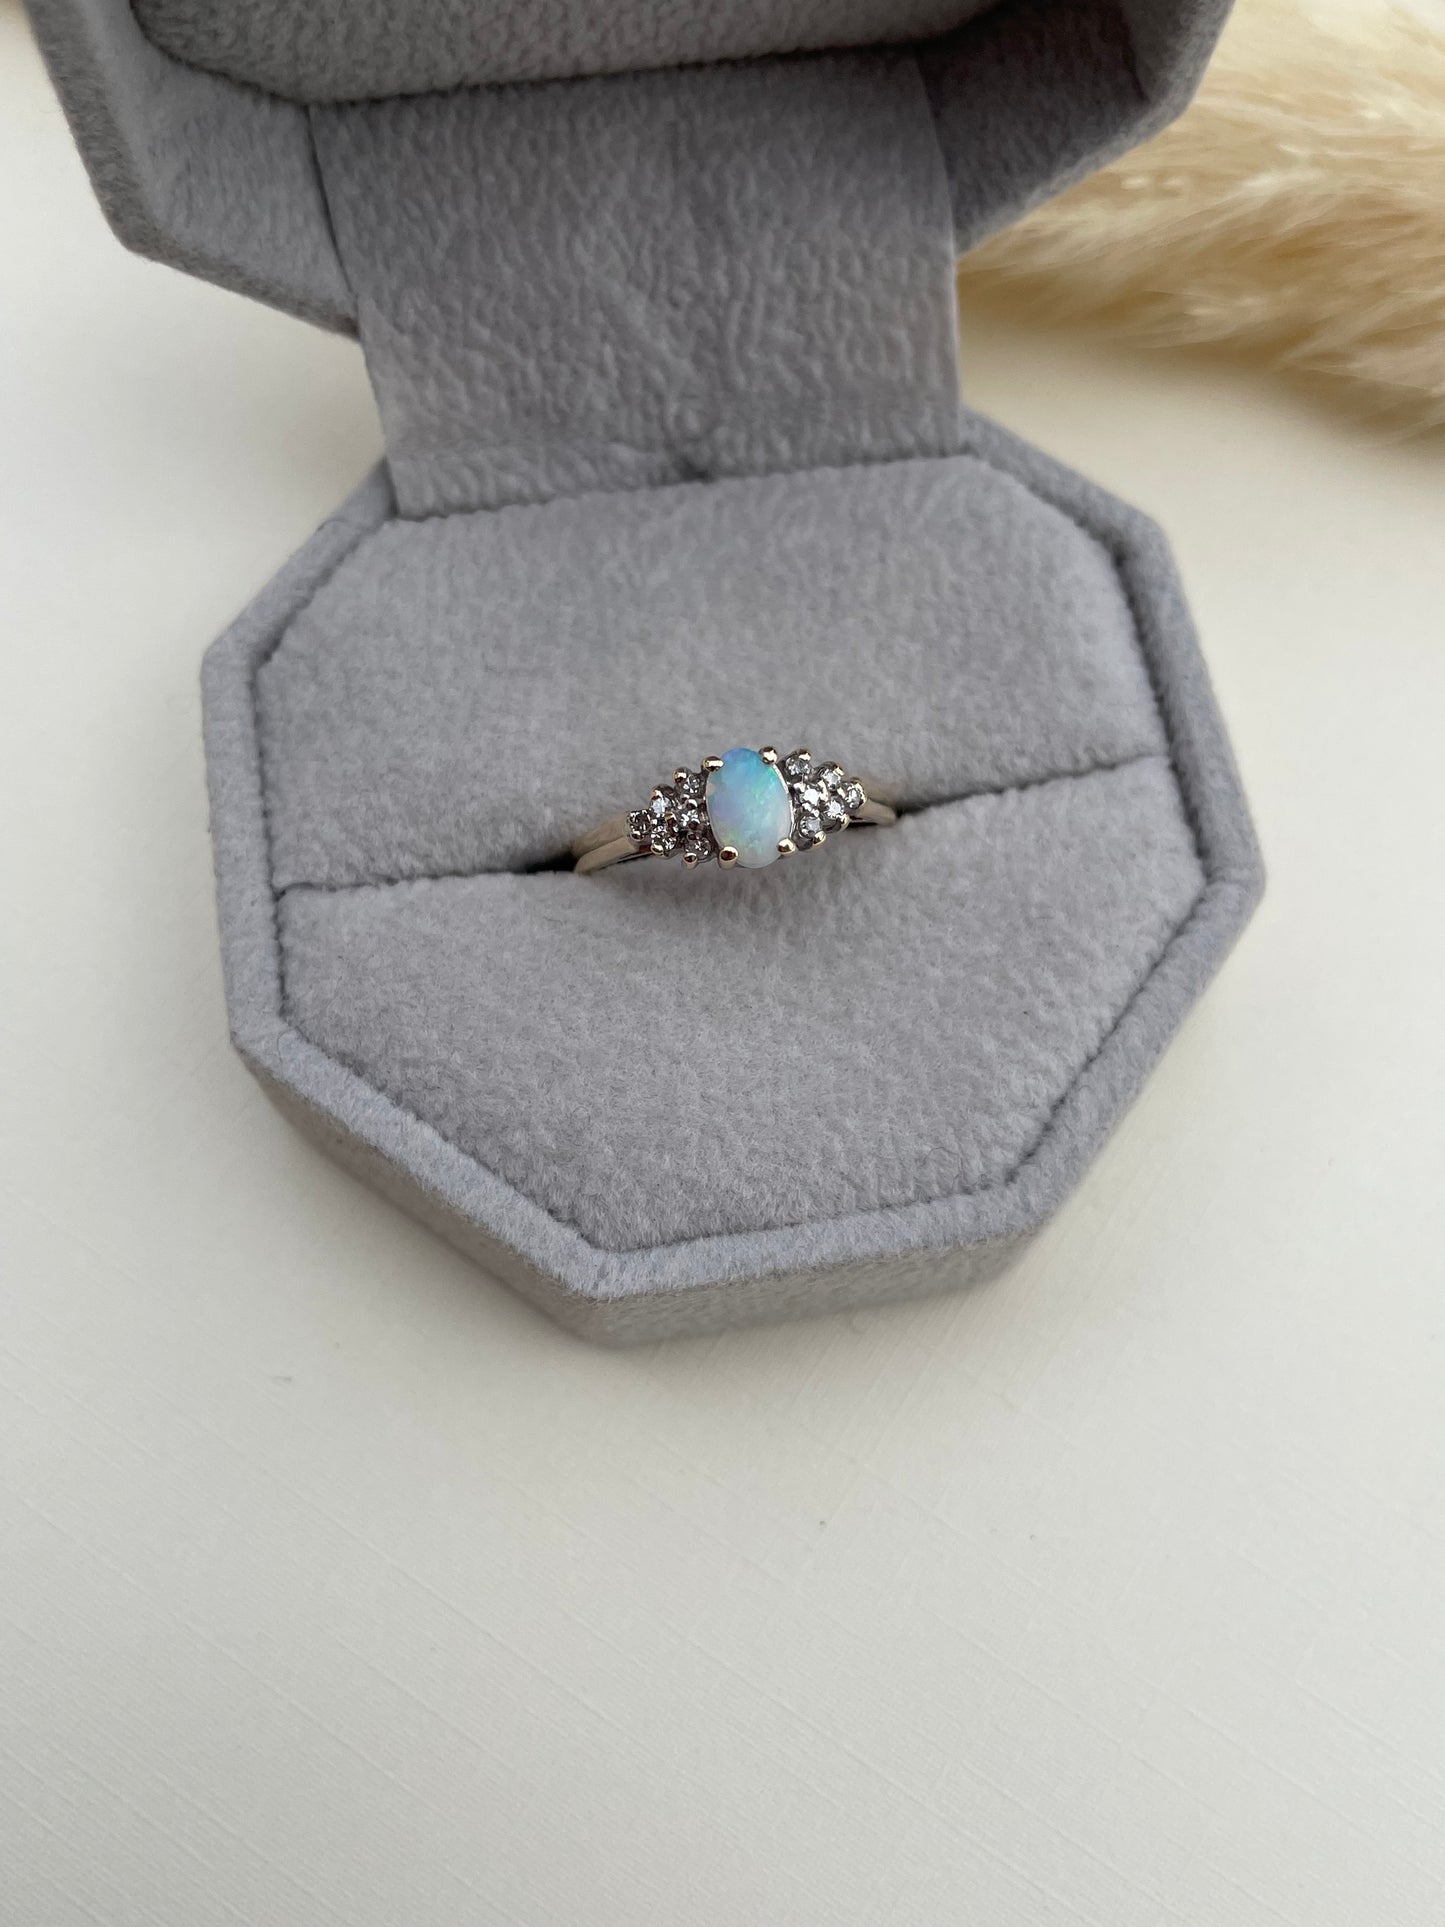 Vintage 10K Opal Ring